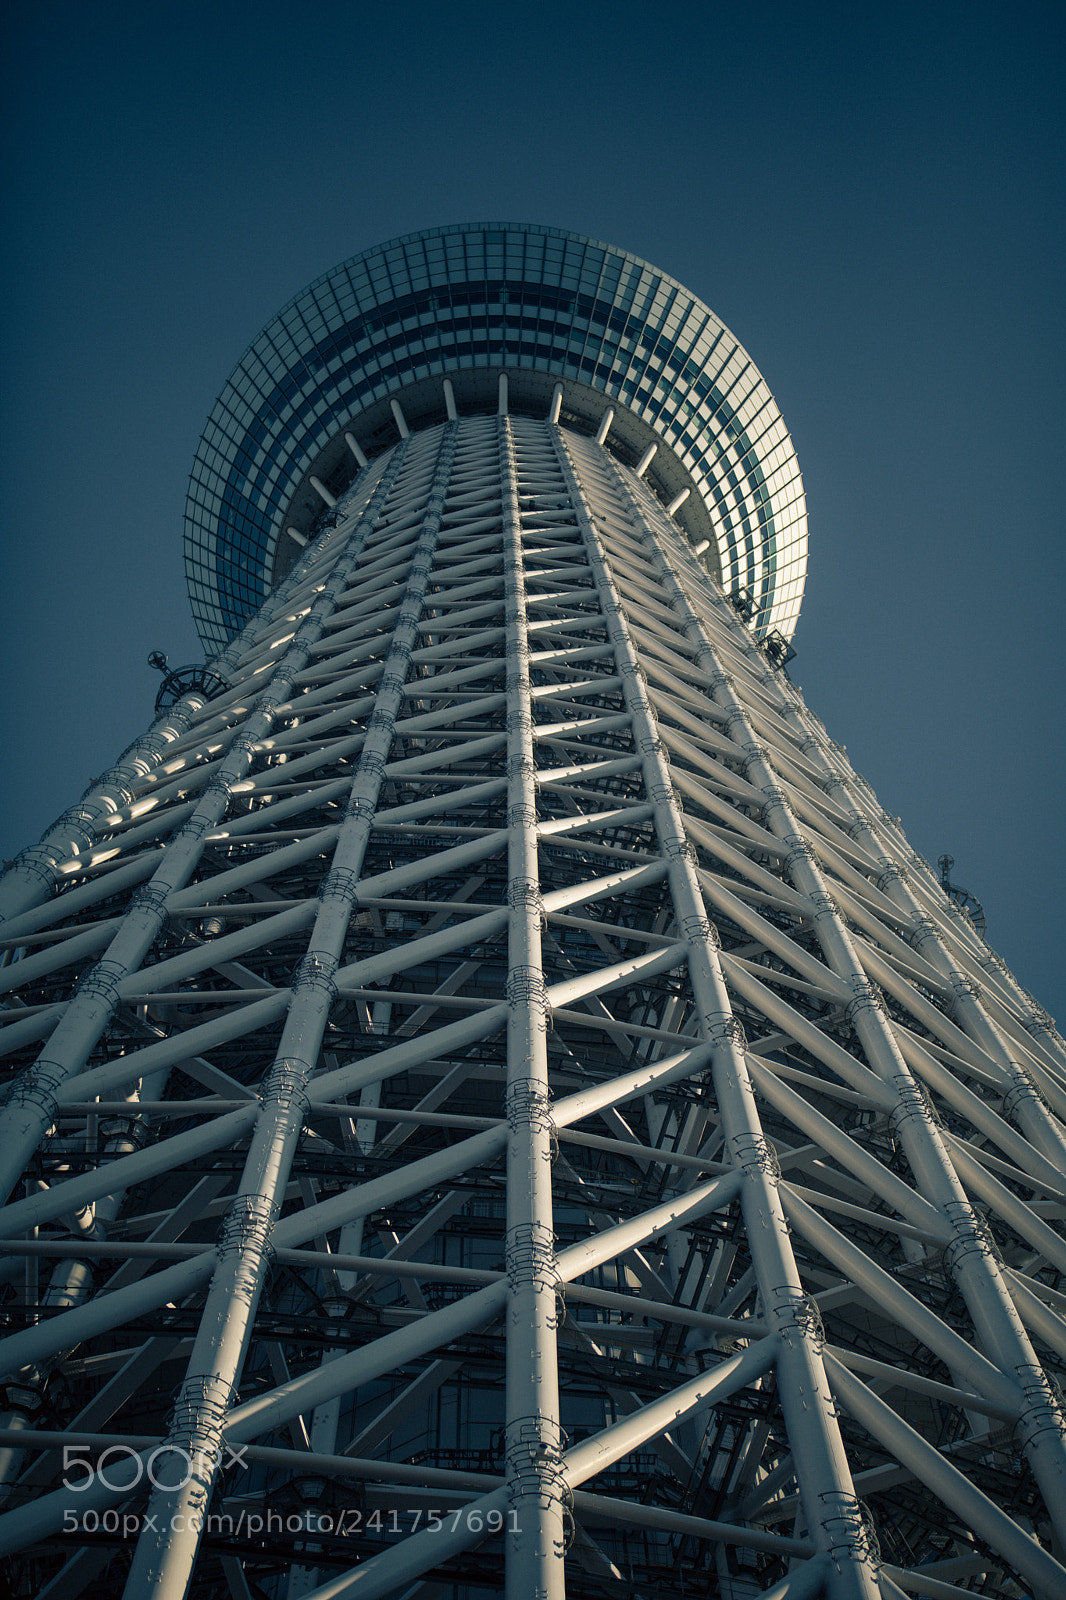 Canon EOS 5D Mark IV sample photo. Tokyo sky tree photography